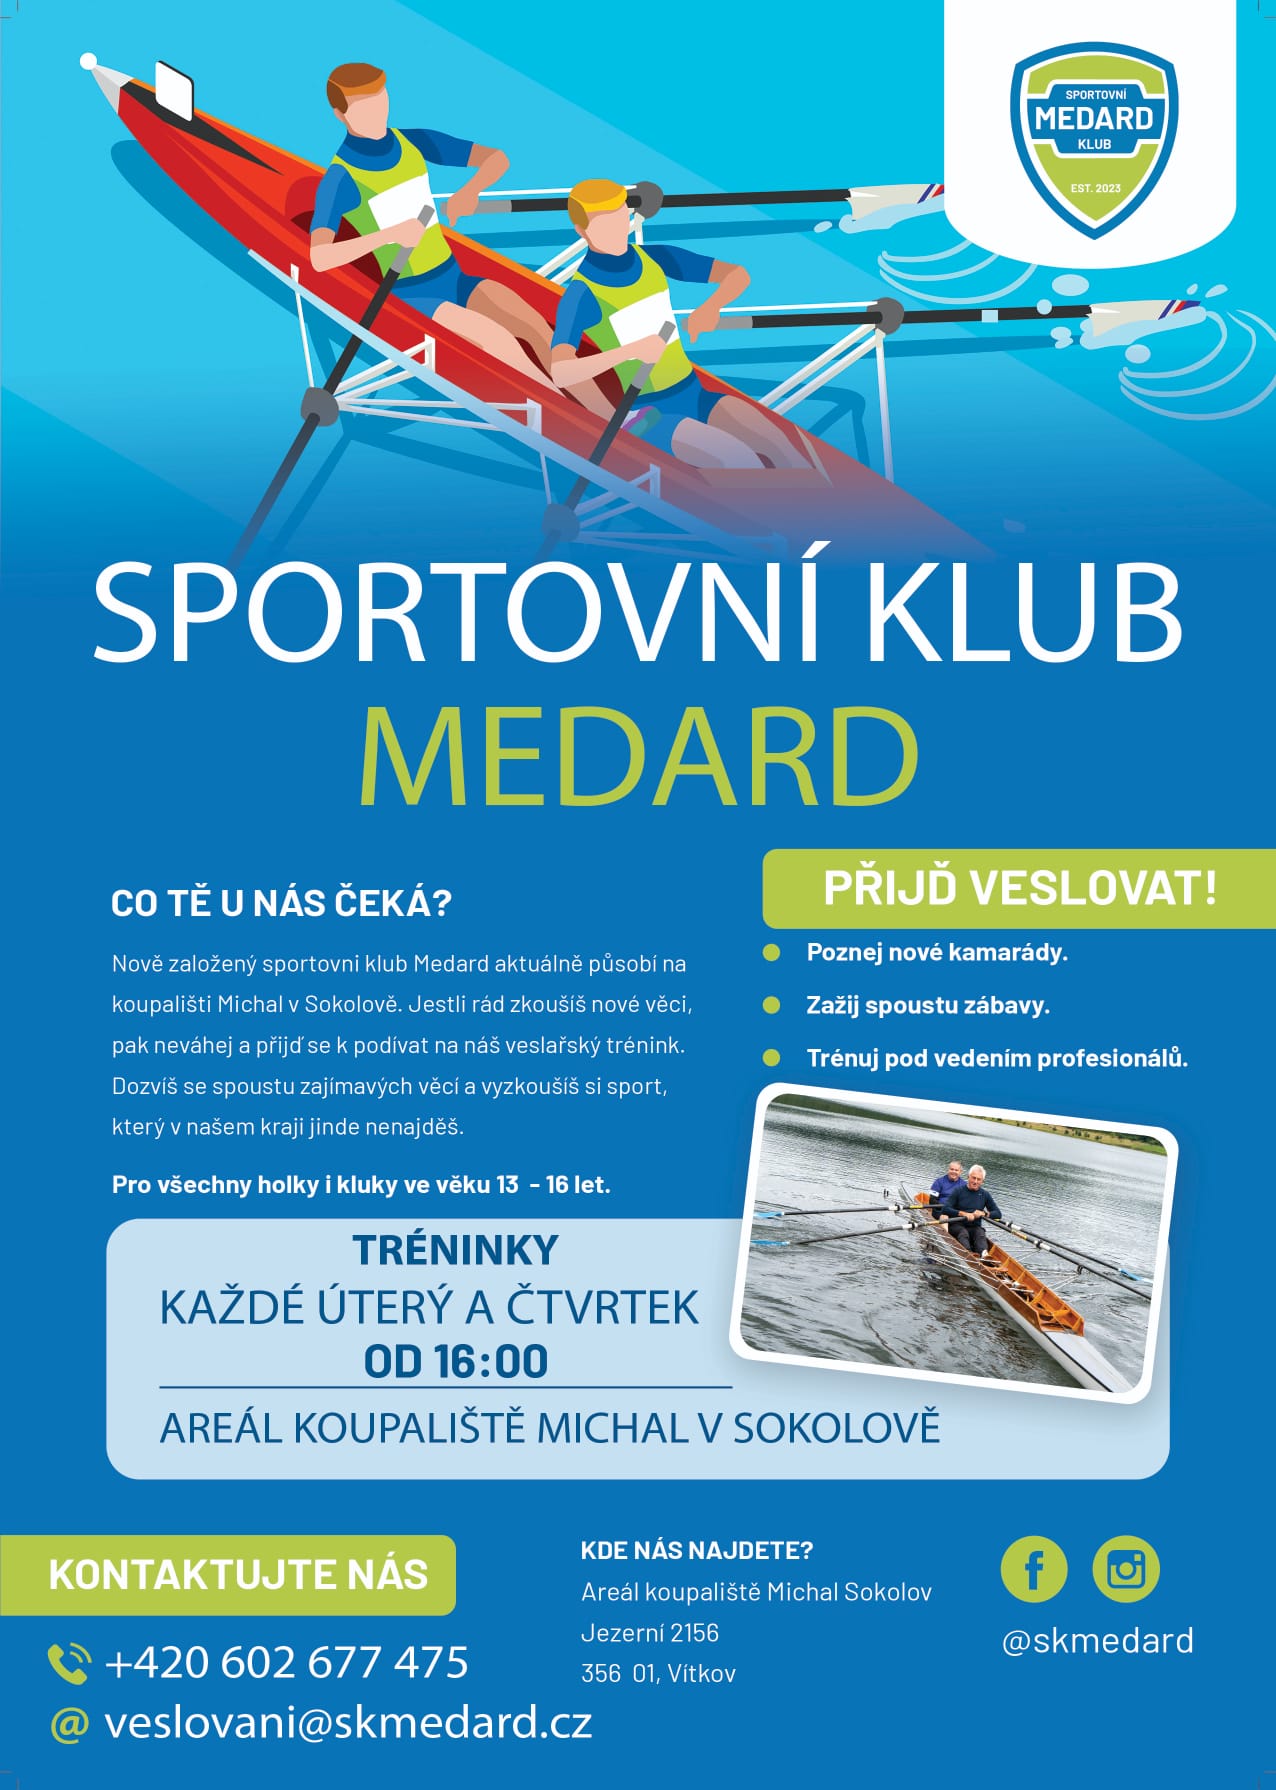 Sportovní klub Medard Sokolov